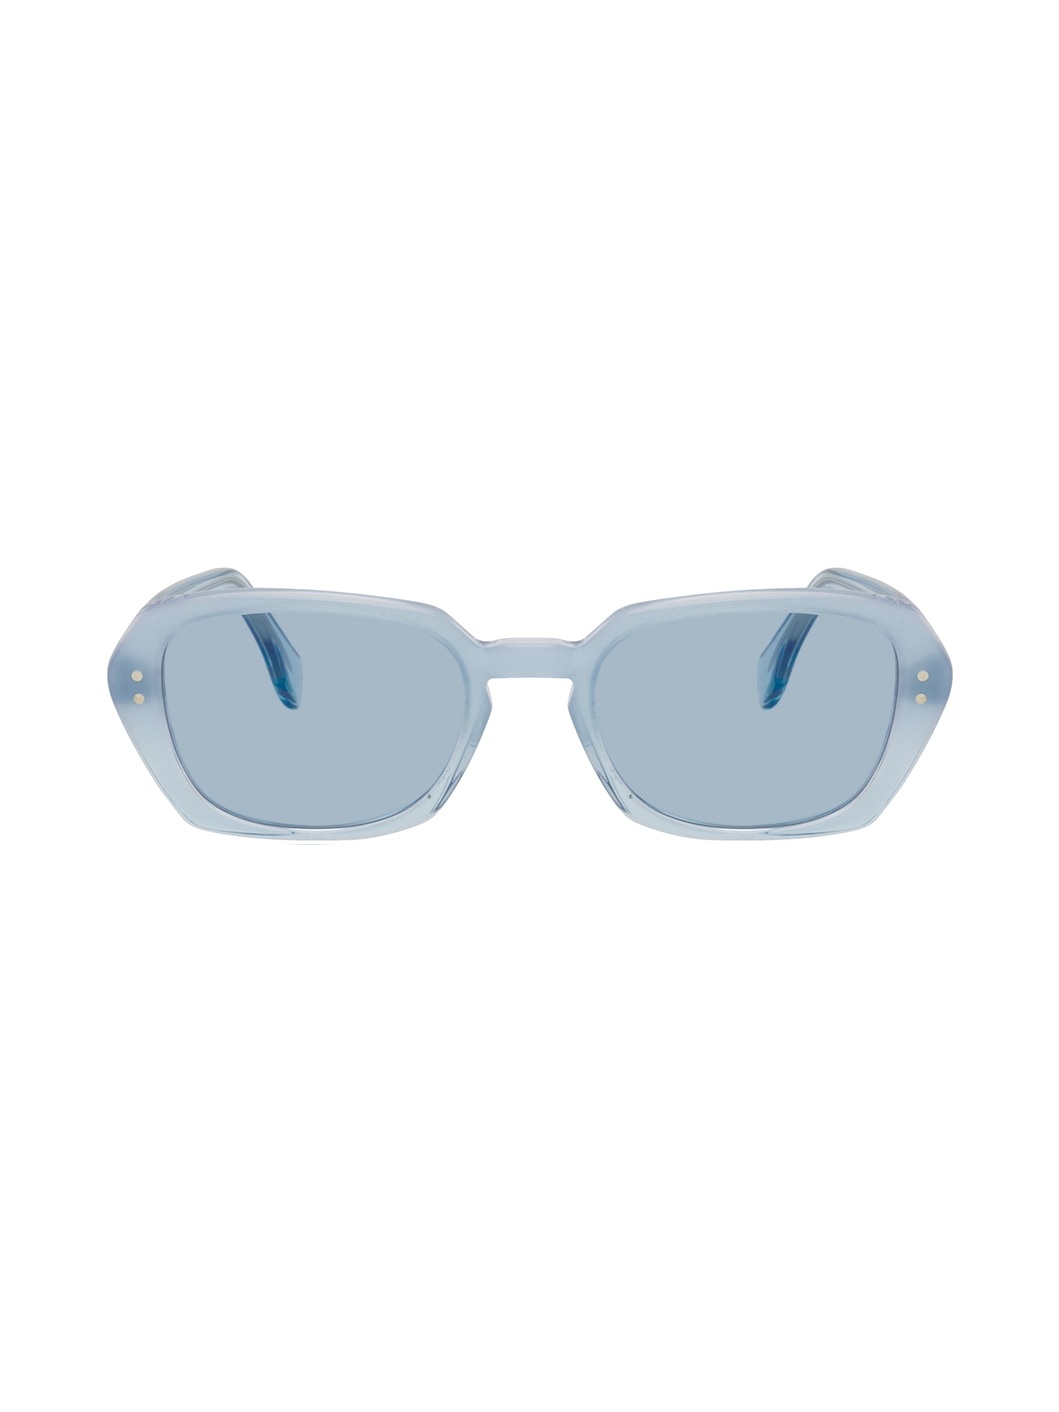 Blue Earth Sunglasses - 1